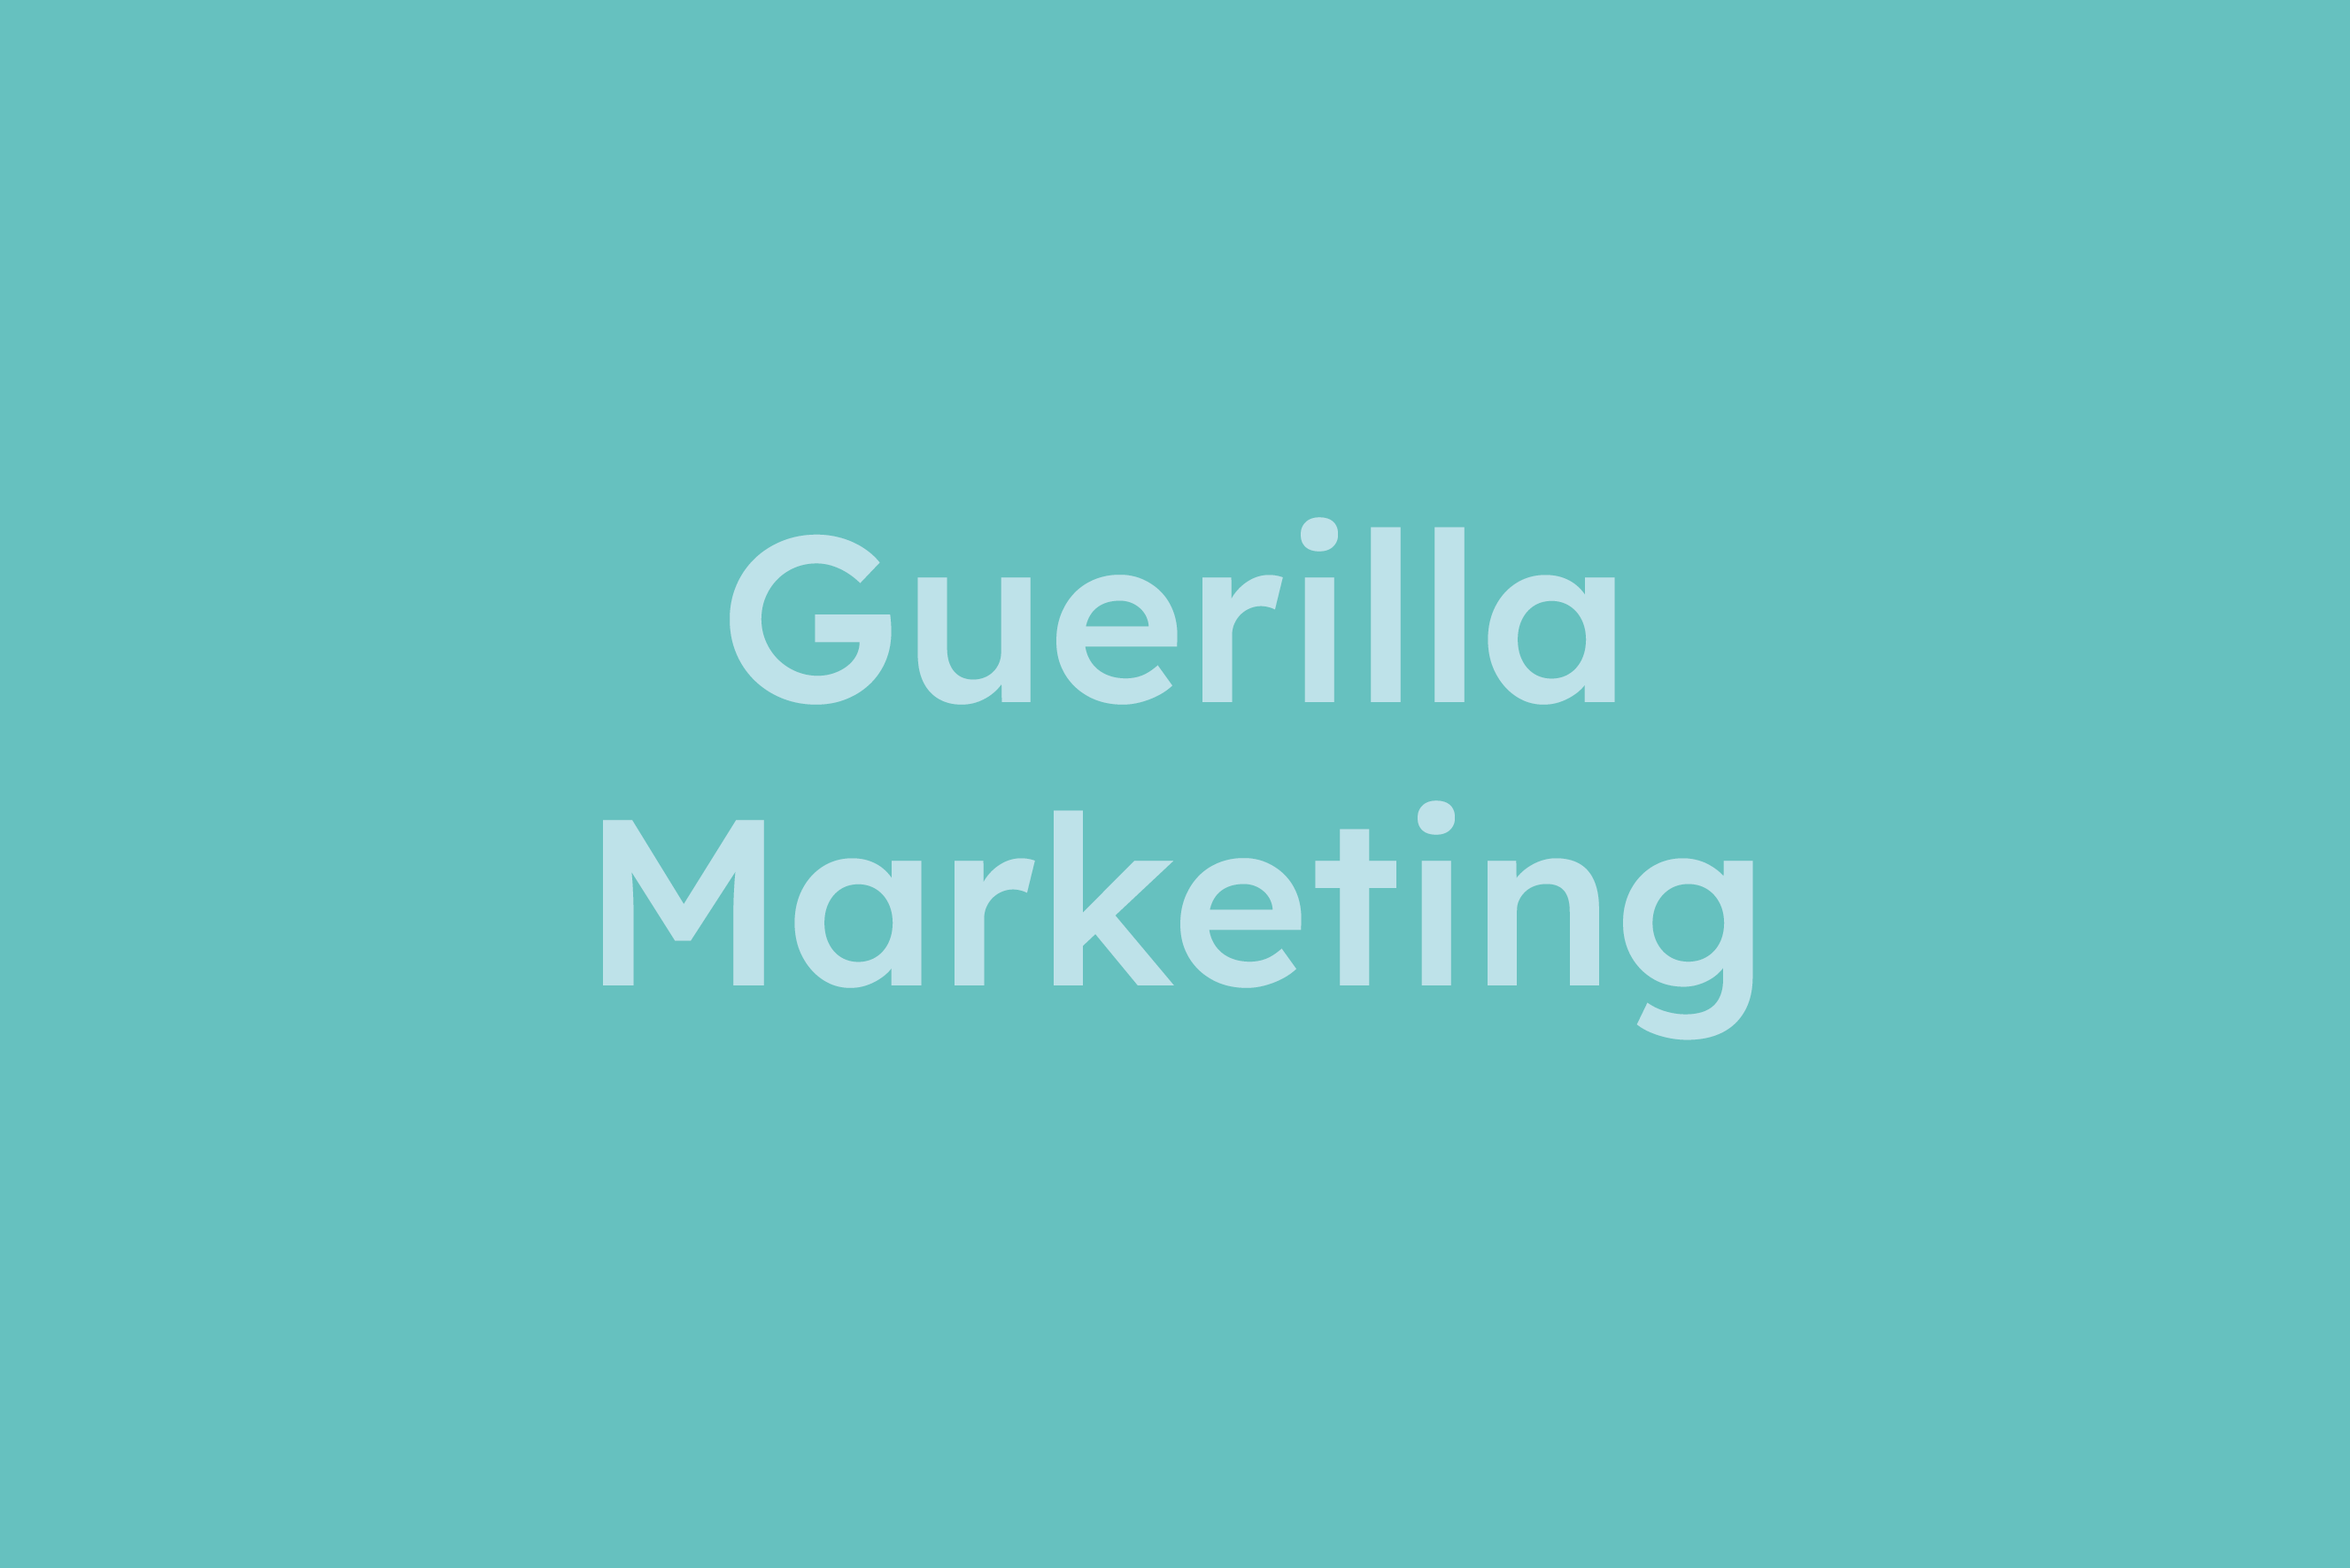 Guerilla Marketing erklärt im Glossar von Campaign